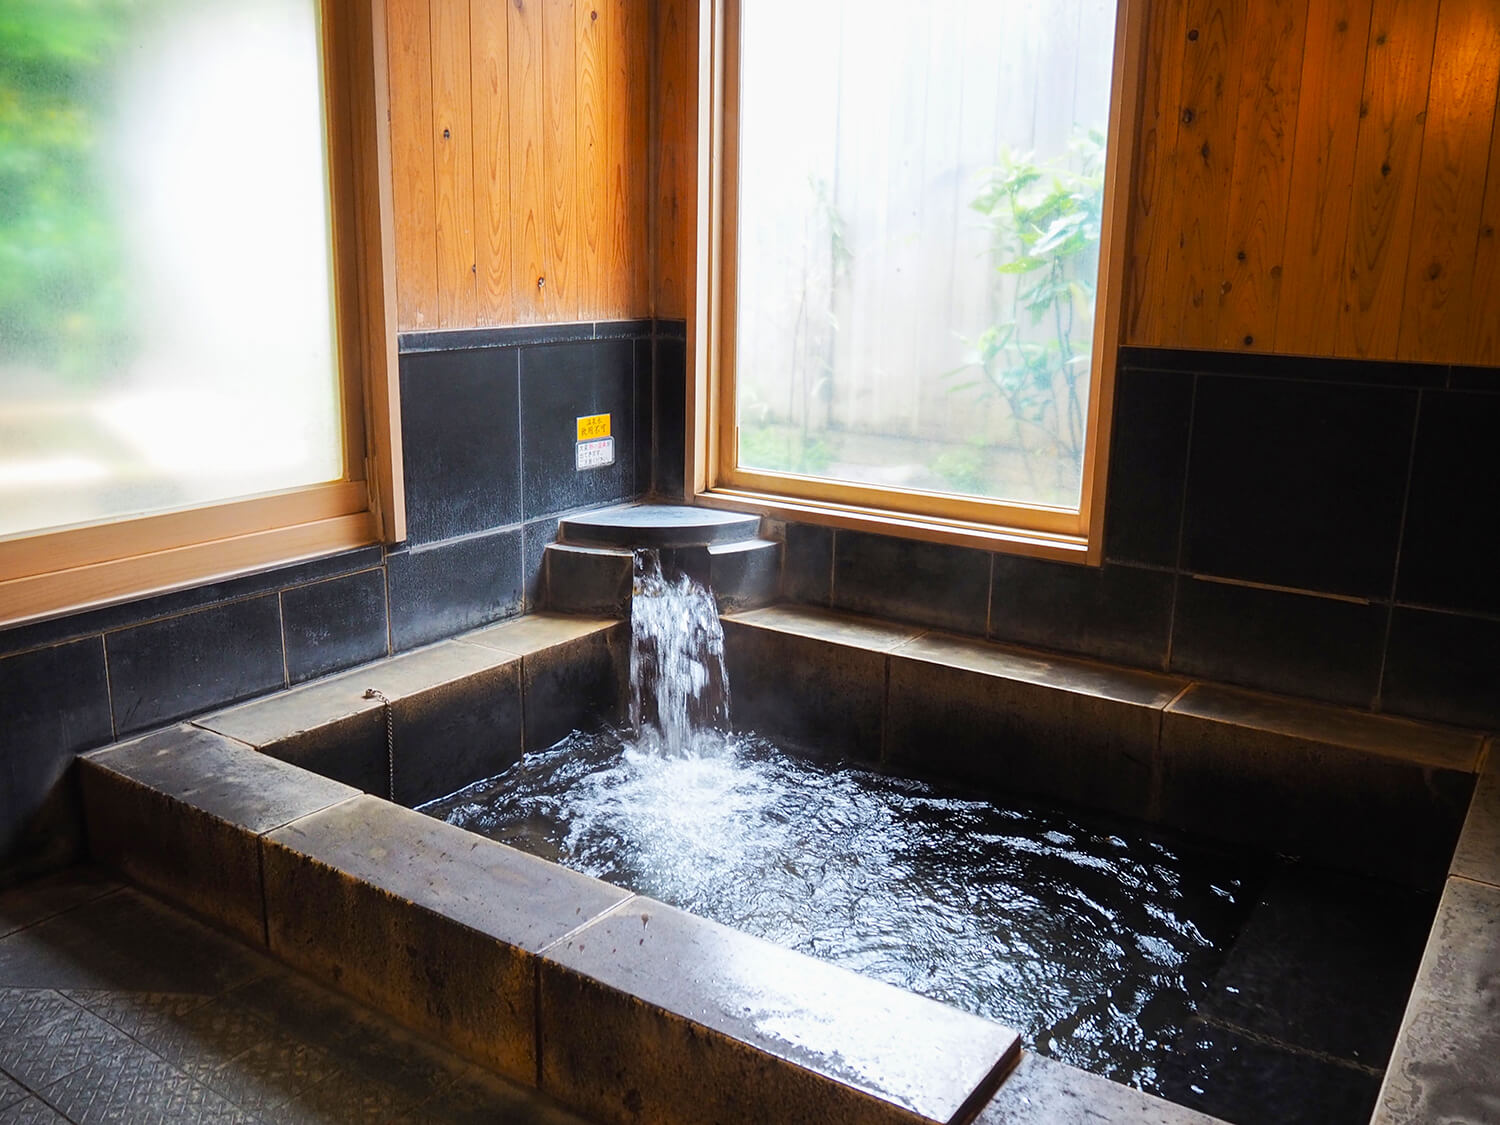 2,700円の部屋は全9室。内湯は石風呂または檜風呂の2タイプがある